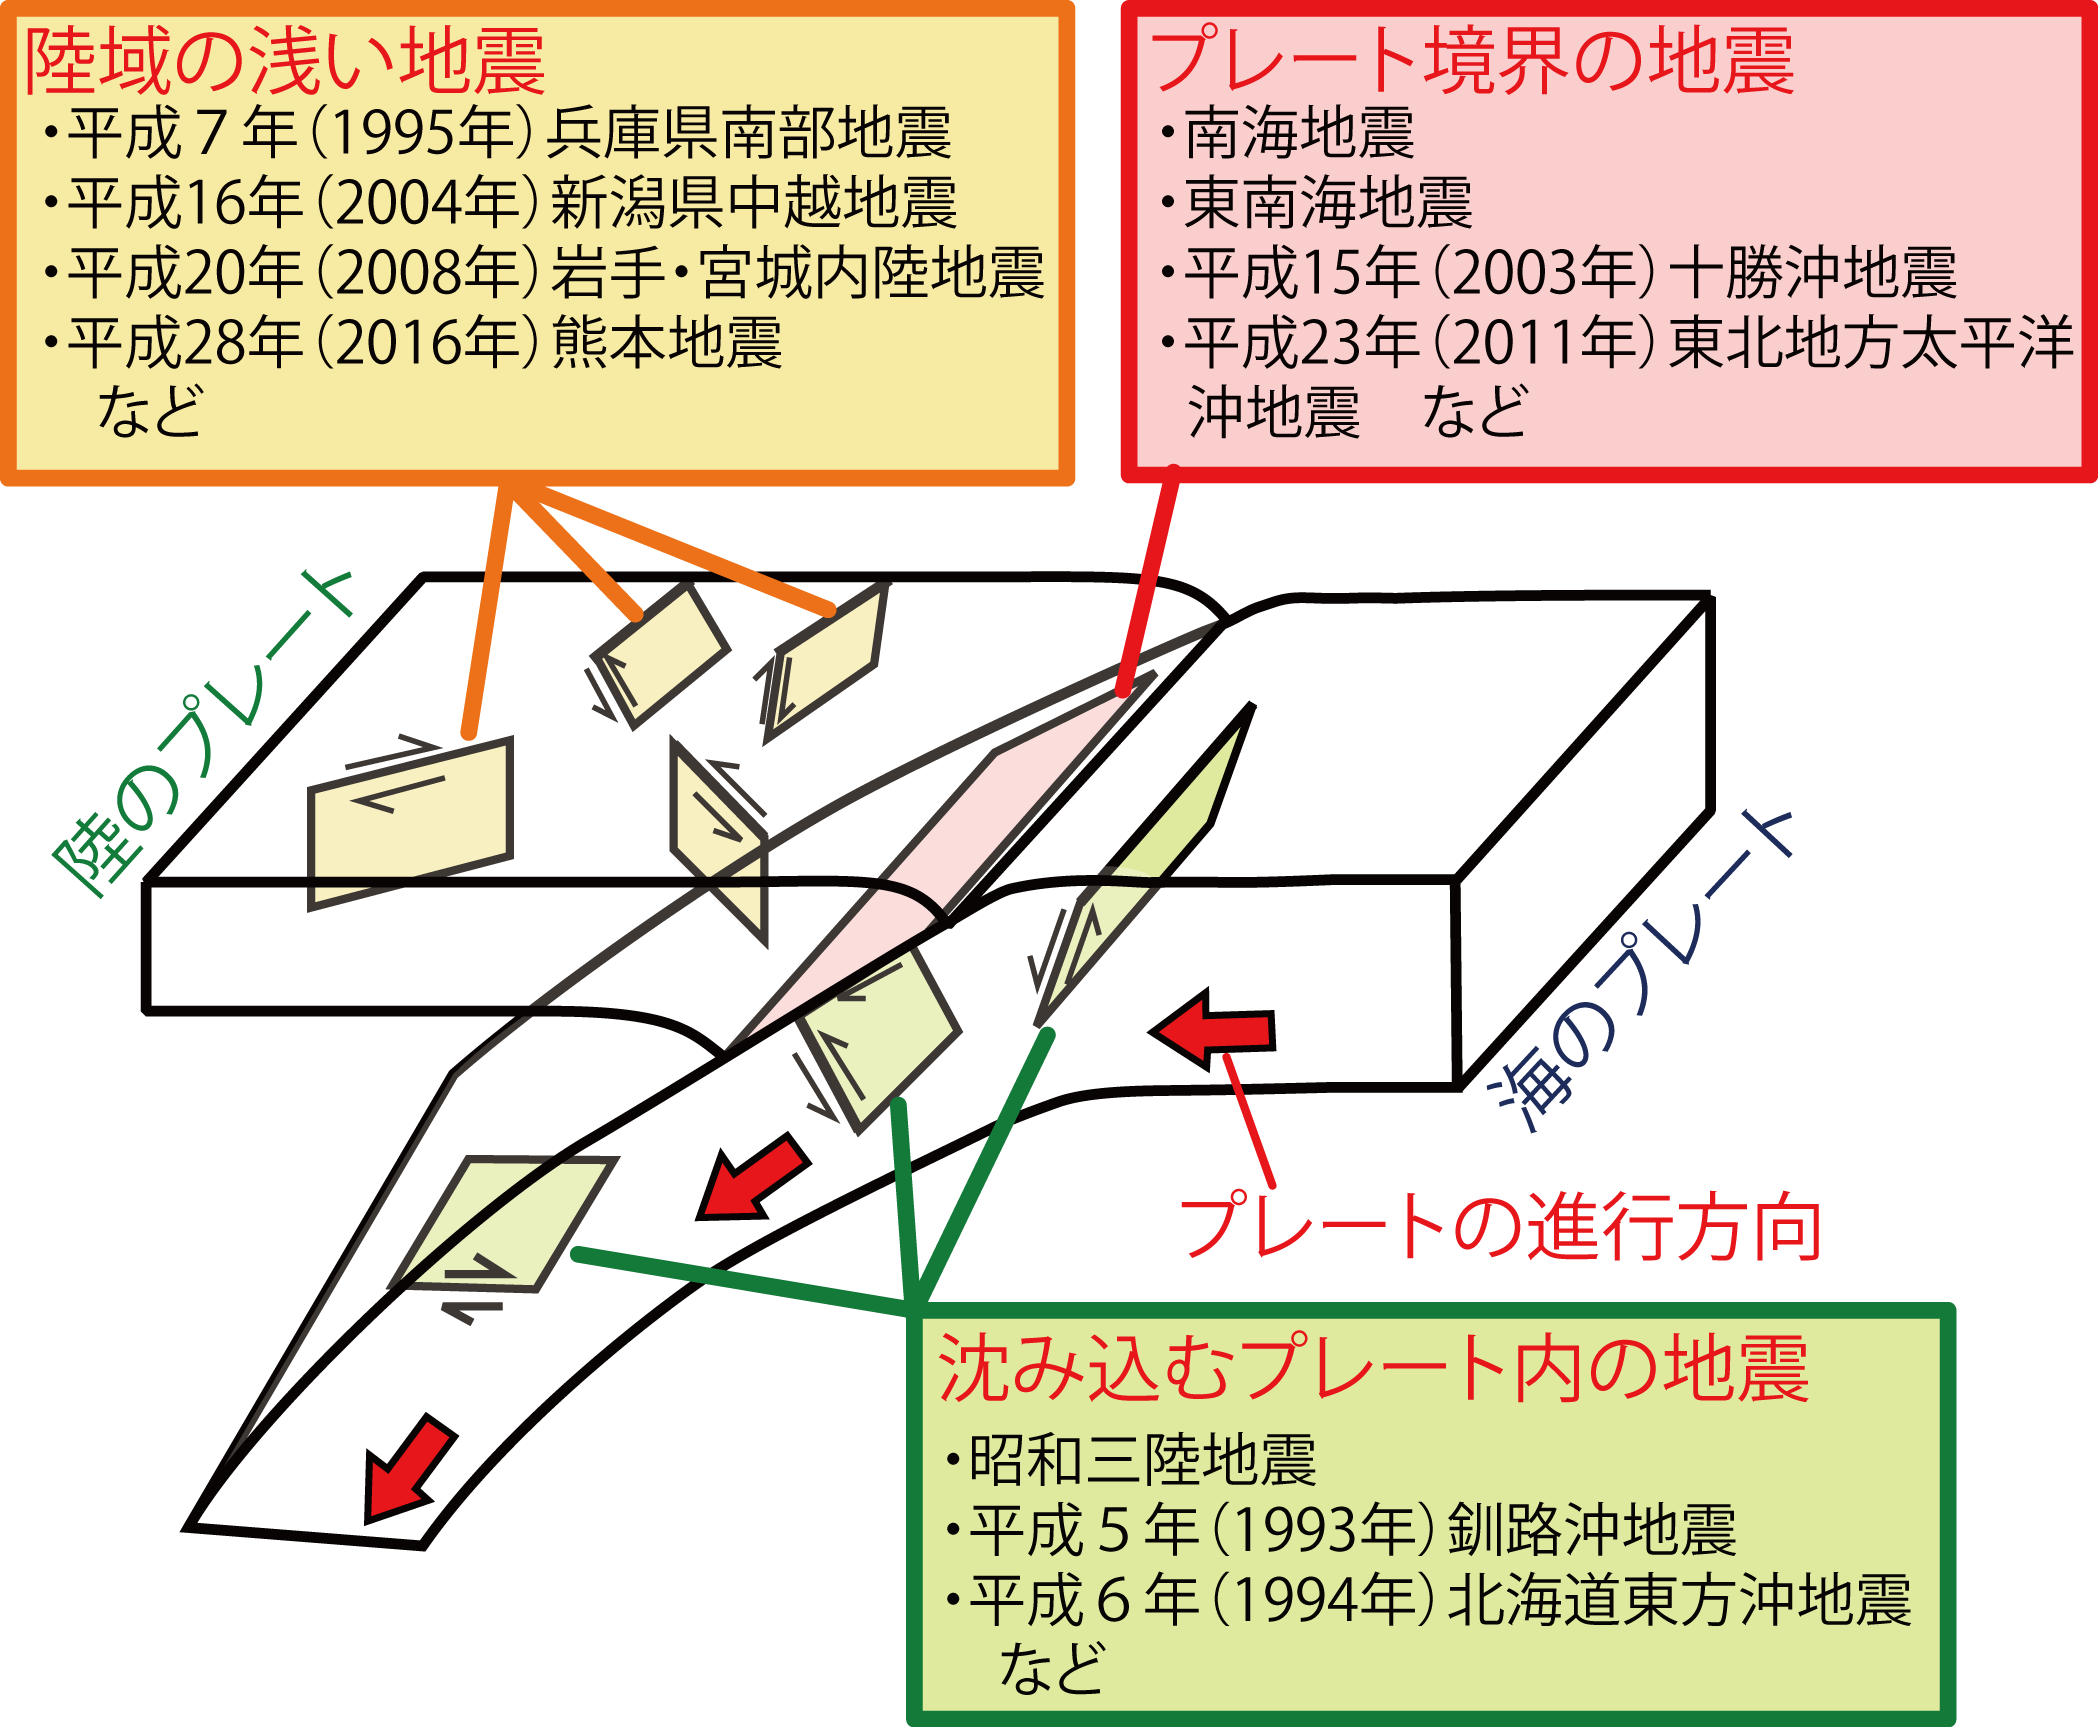 日本付近とその周辺で発生する主な地震の模式図